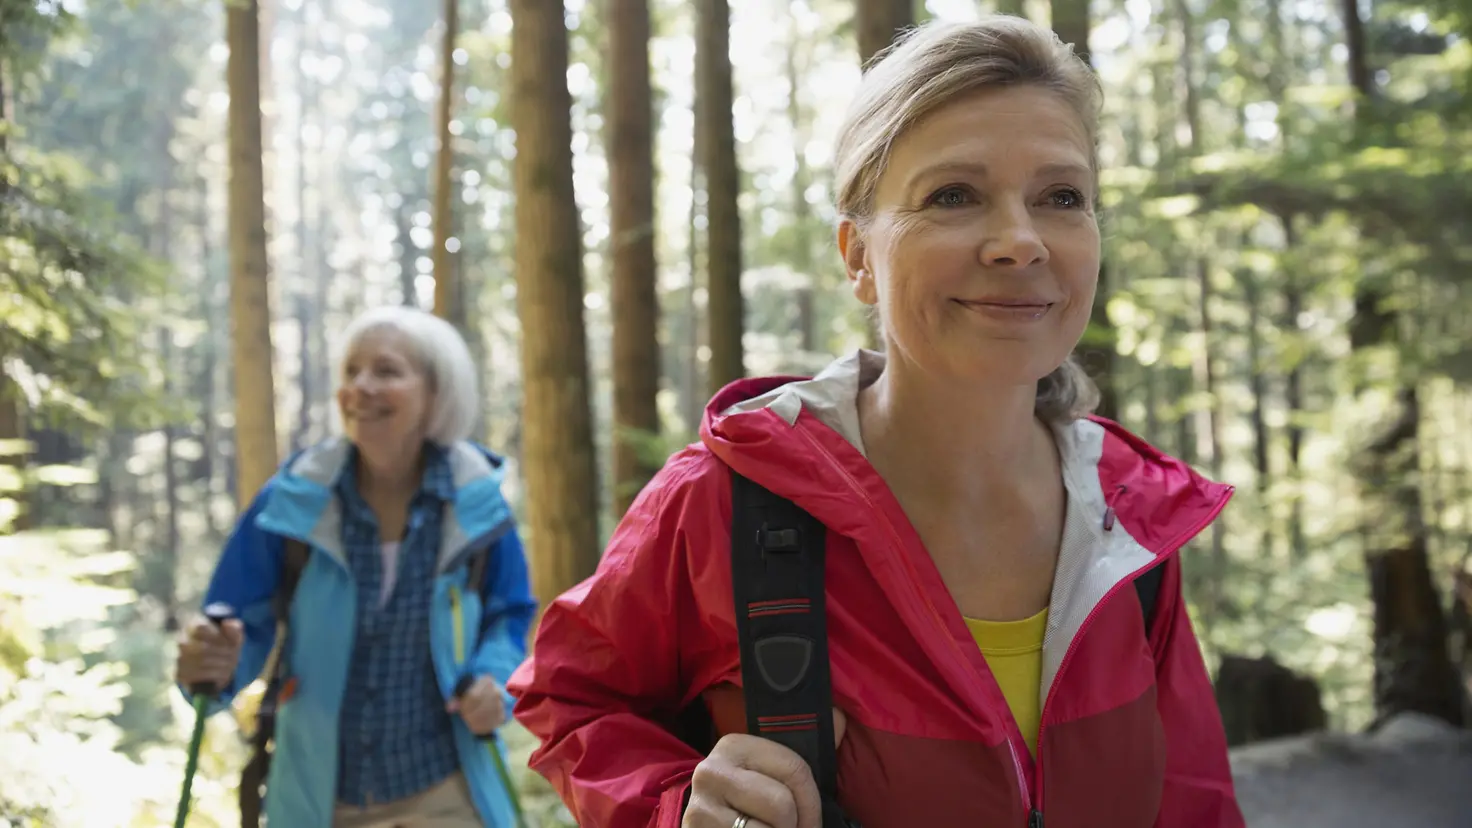 Zwei Frauen mittleren Alters wandern zusammen durch den Wald und sehen glücklich aus.